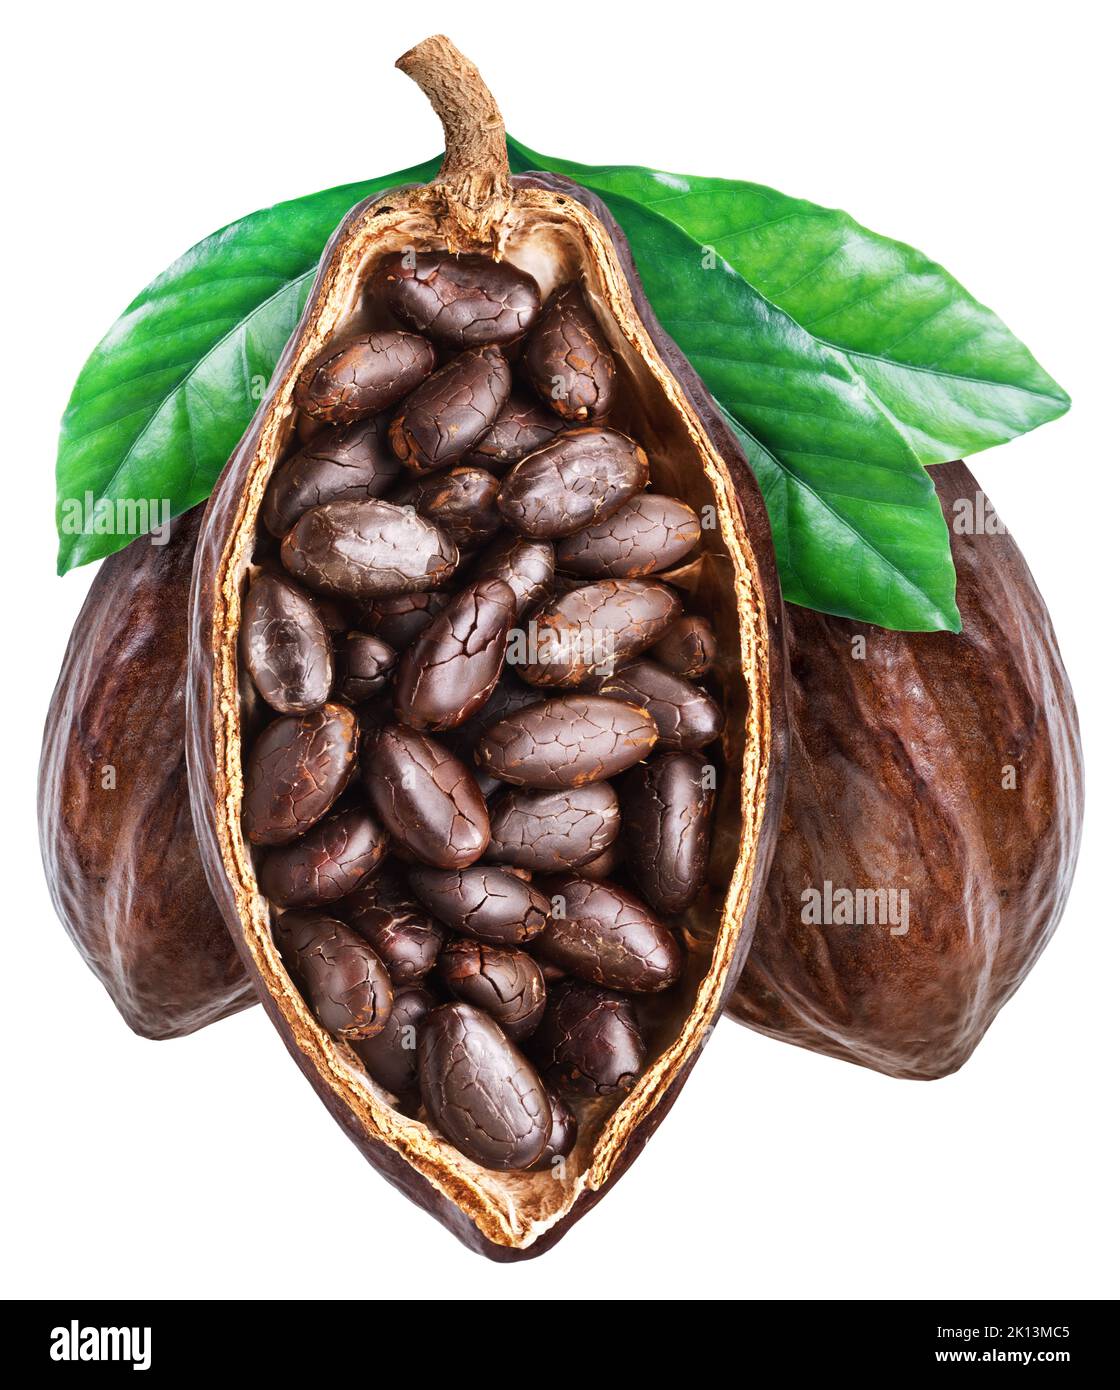 Tre frutti di cacao con fave di cacao essiccate isolate su fondo bianco. Tracciato di ritaglio. Foto Stock